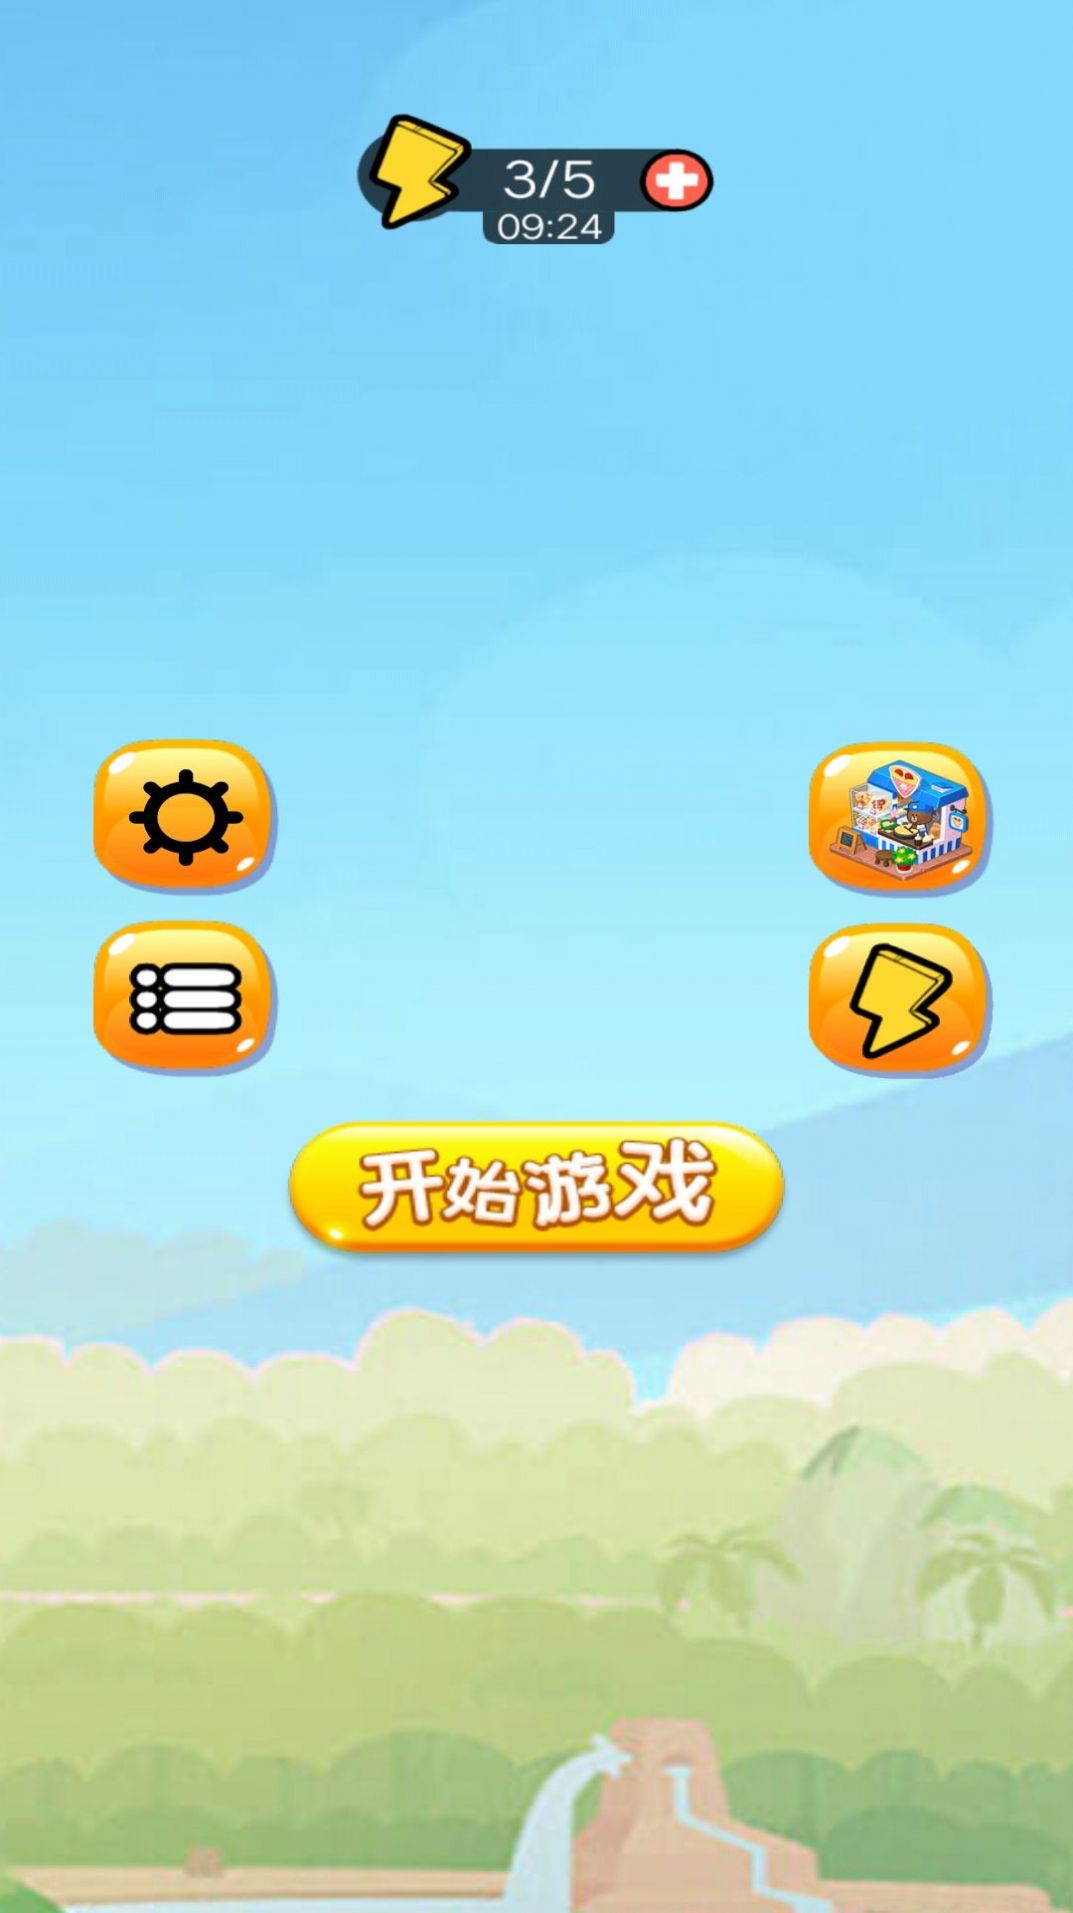 苹果蛇大闯关游戏官方版下载 v1 安卓版2